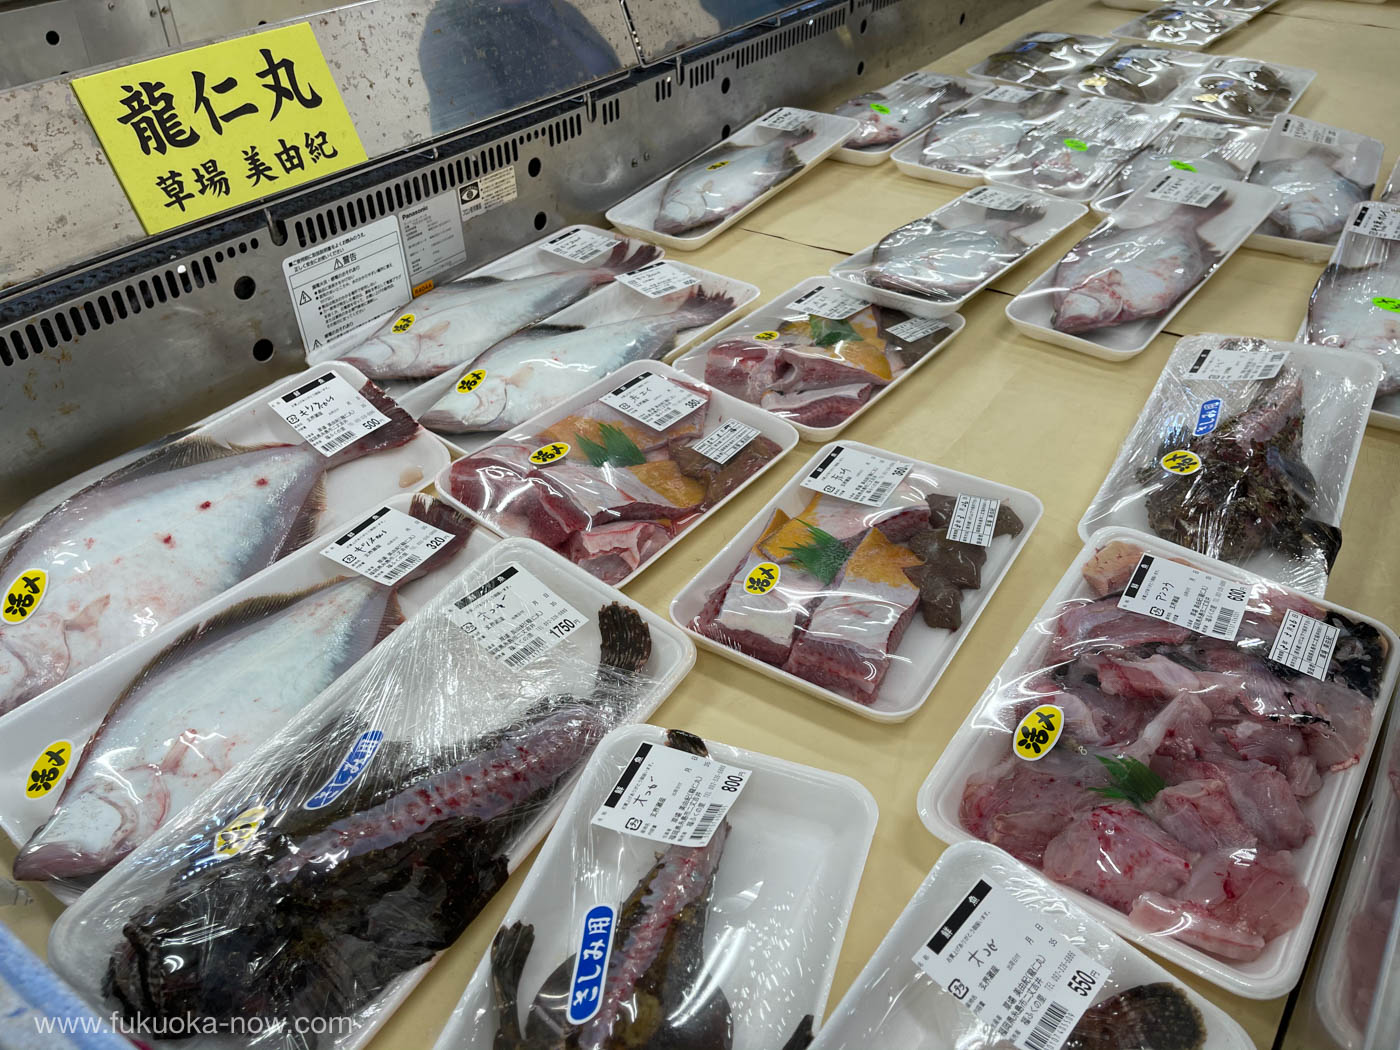 Itoshima market Fuku Fuku no sato, 糸島の直売所福ふくの里